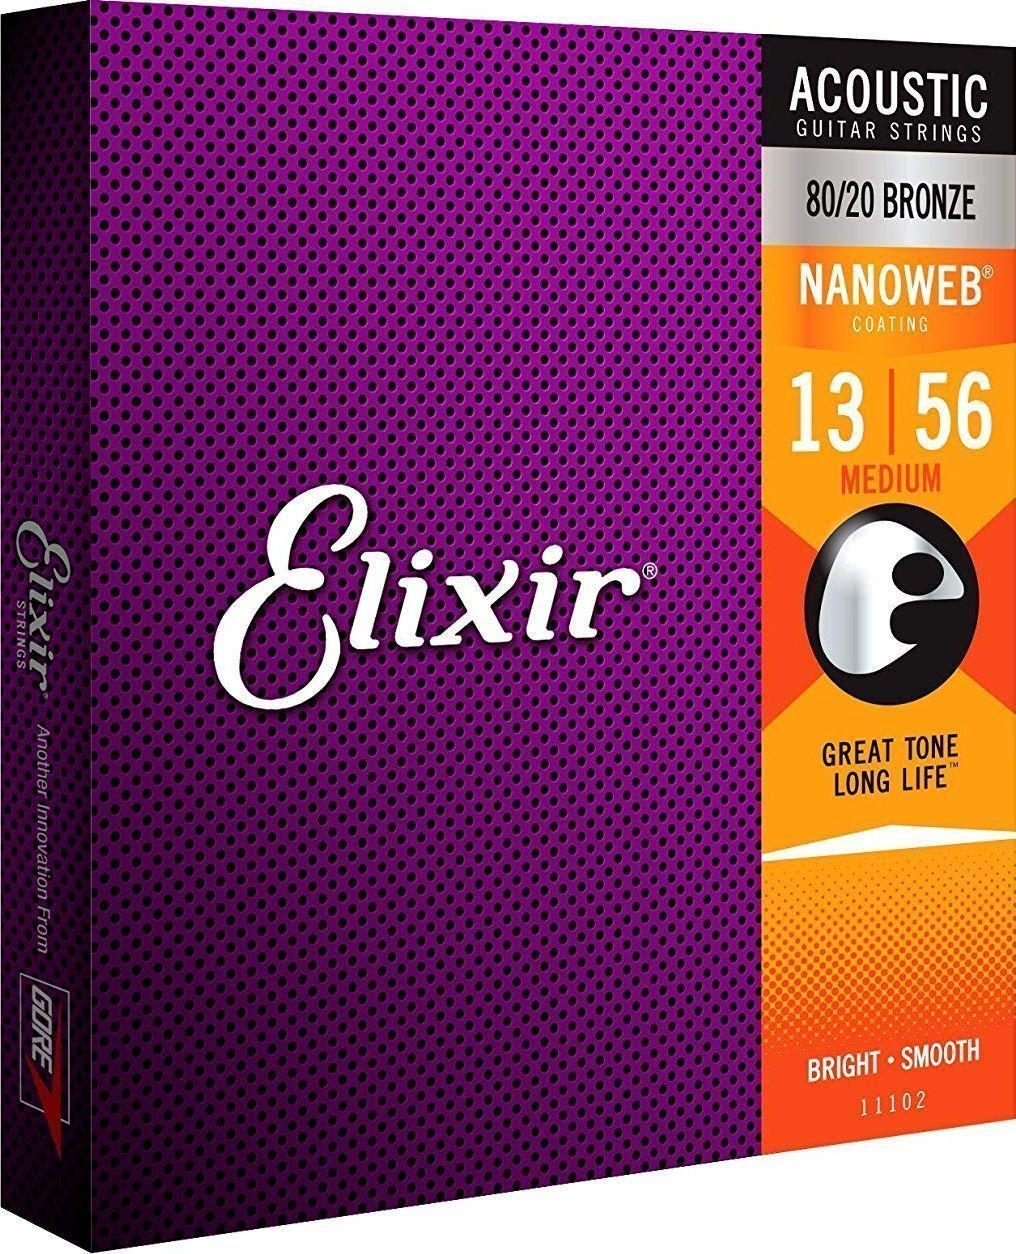 Struny pre akustickú gitaru Elixir 11102 Nanoweb 13-56